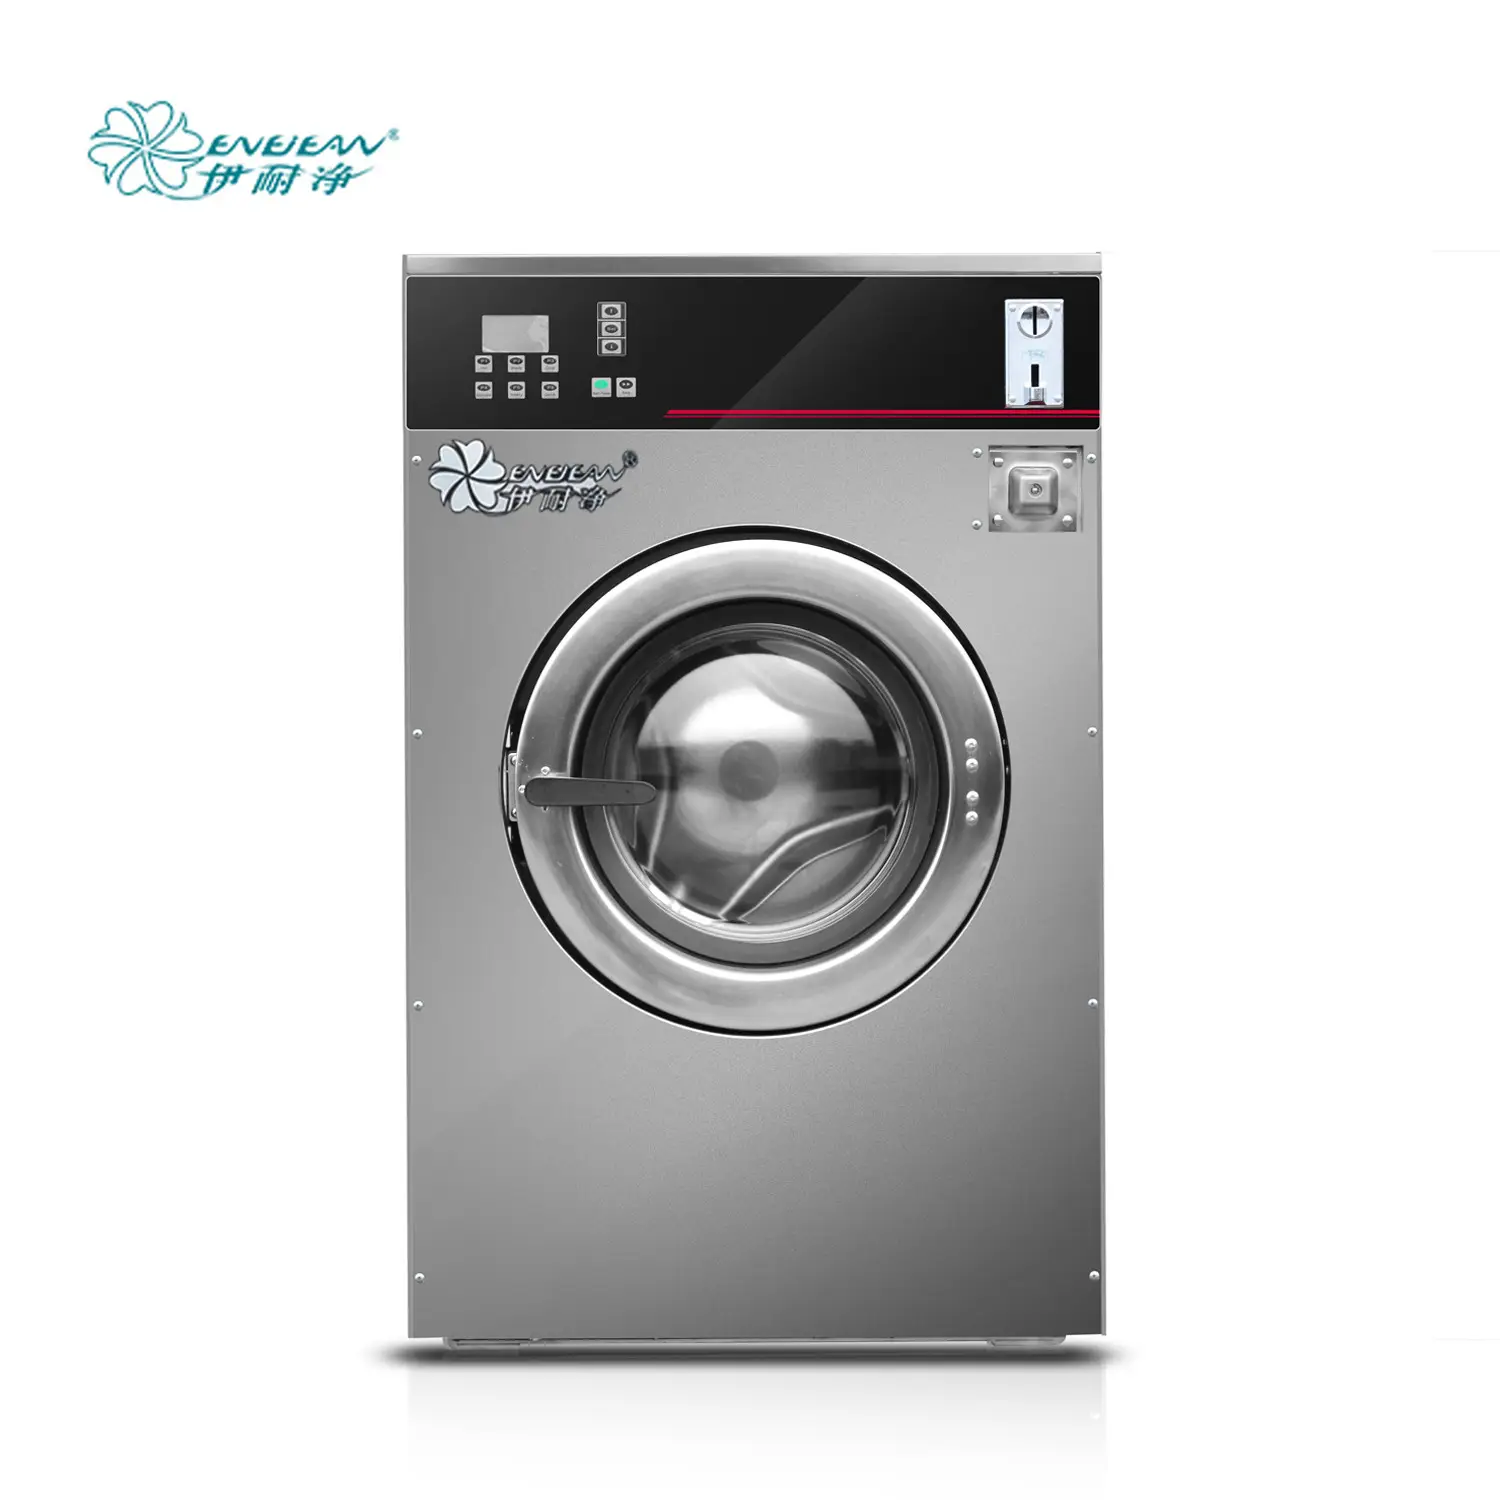 Whirlpool çamaşır makinesi, Midea ön yüklemeli çamaşır makinesi, Süper asya çamaşır makinesi